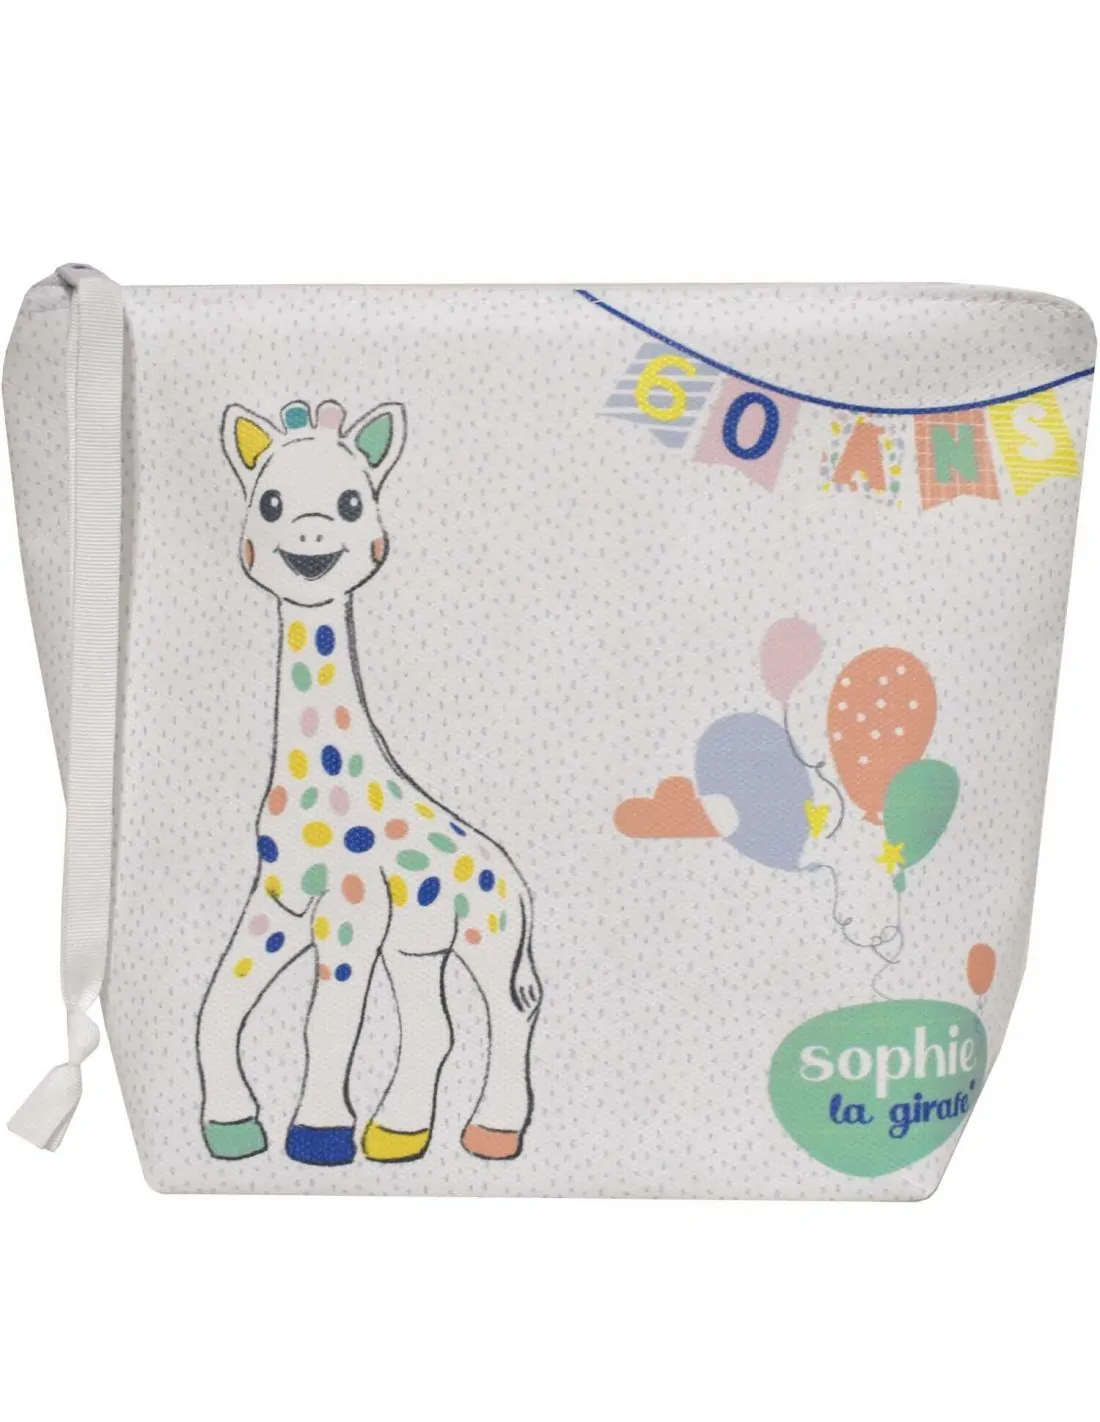 Pochette maillot mouillé Sophie la girafe pastel - Les Petits Protégés